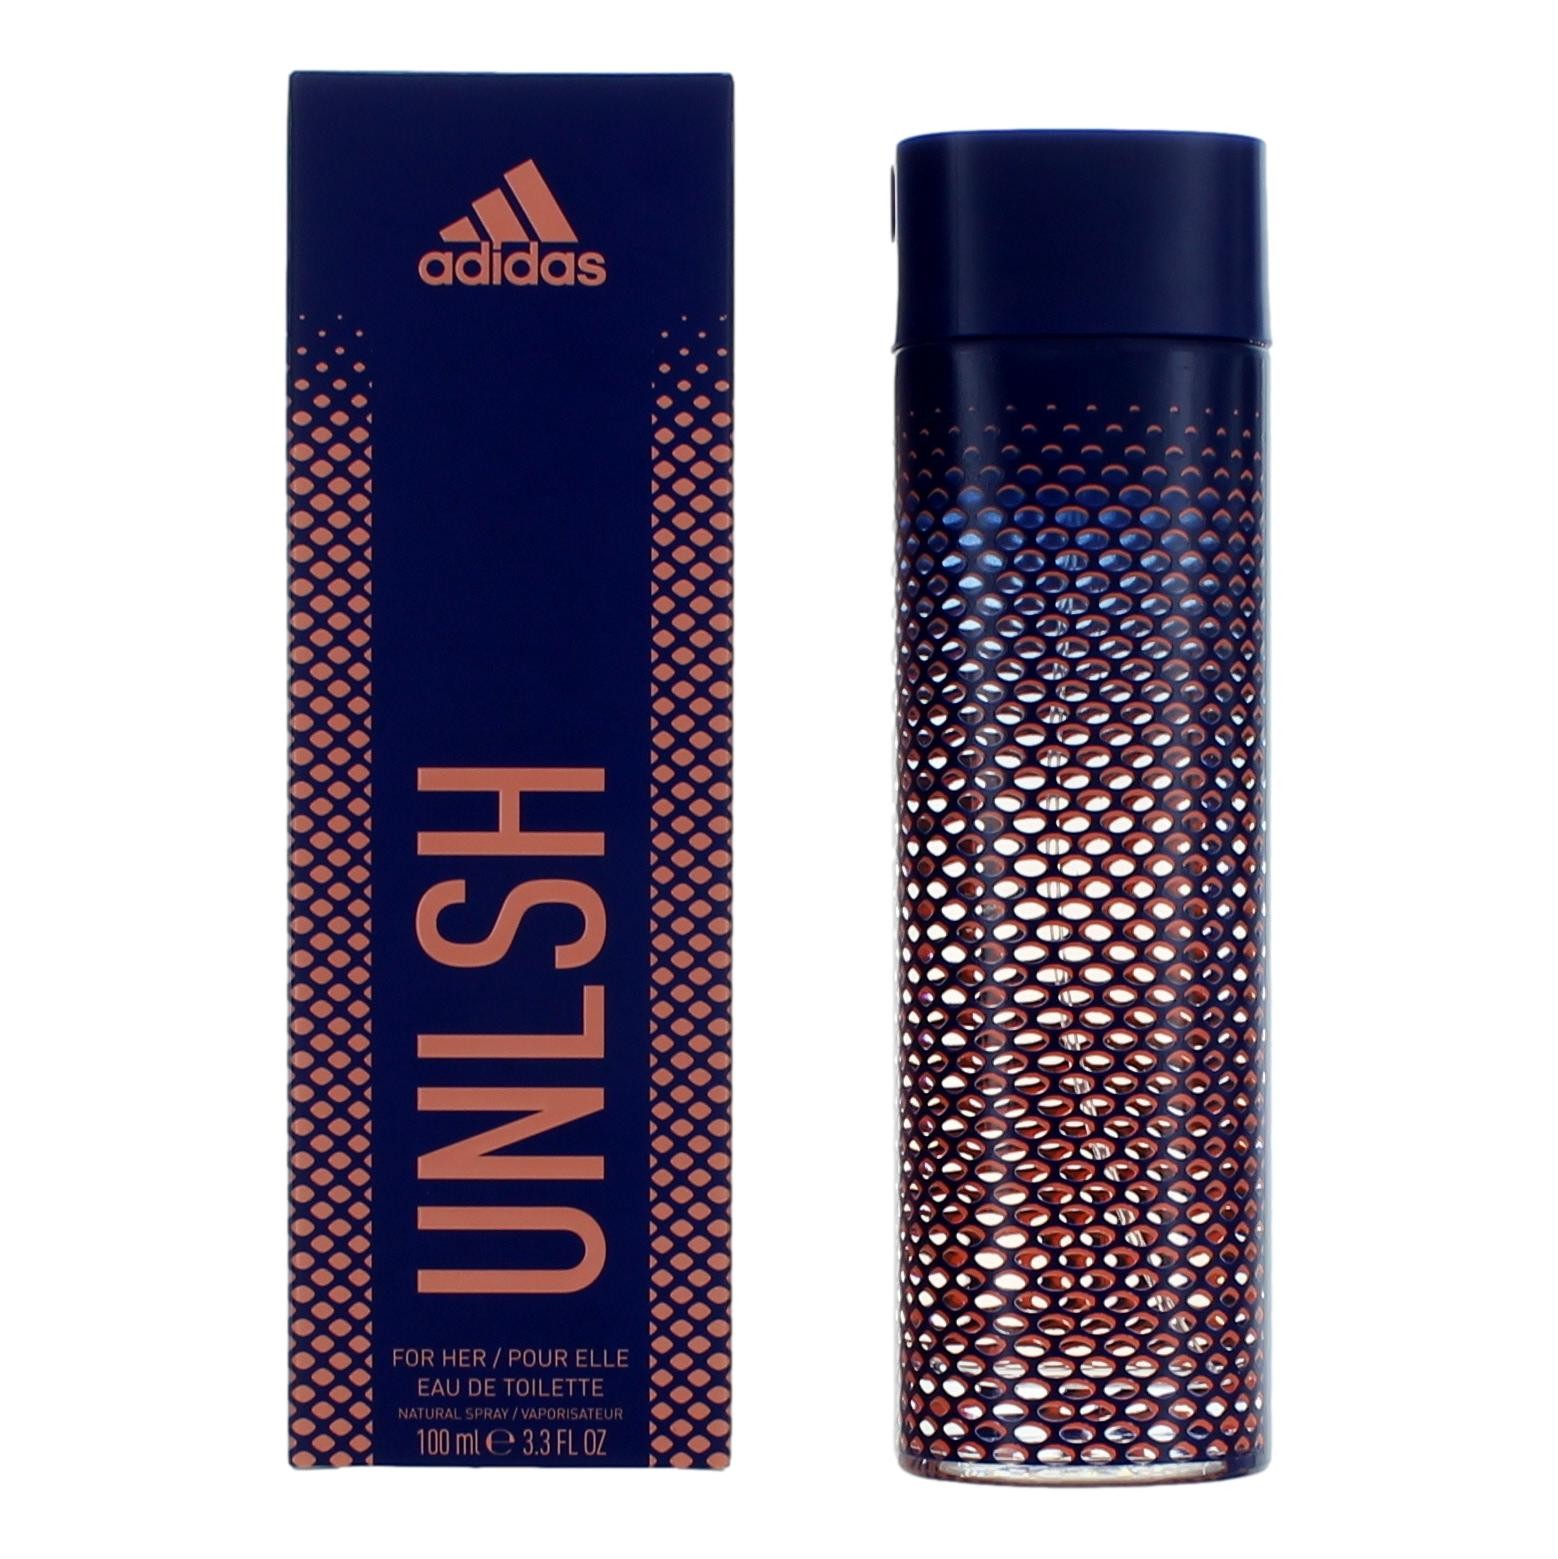 Adidas Sport Unlsh by Adidas, 3.3 oz Eau de Toilette Spray for Women (Unleash)